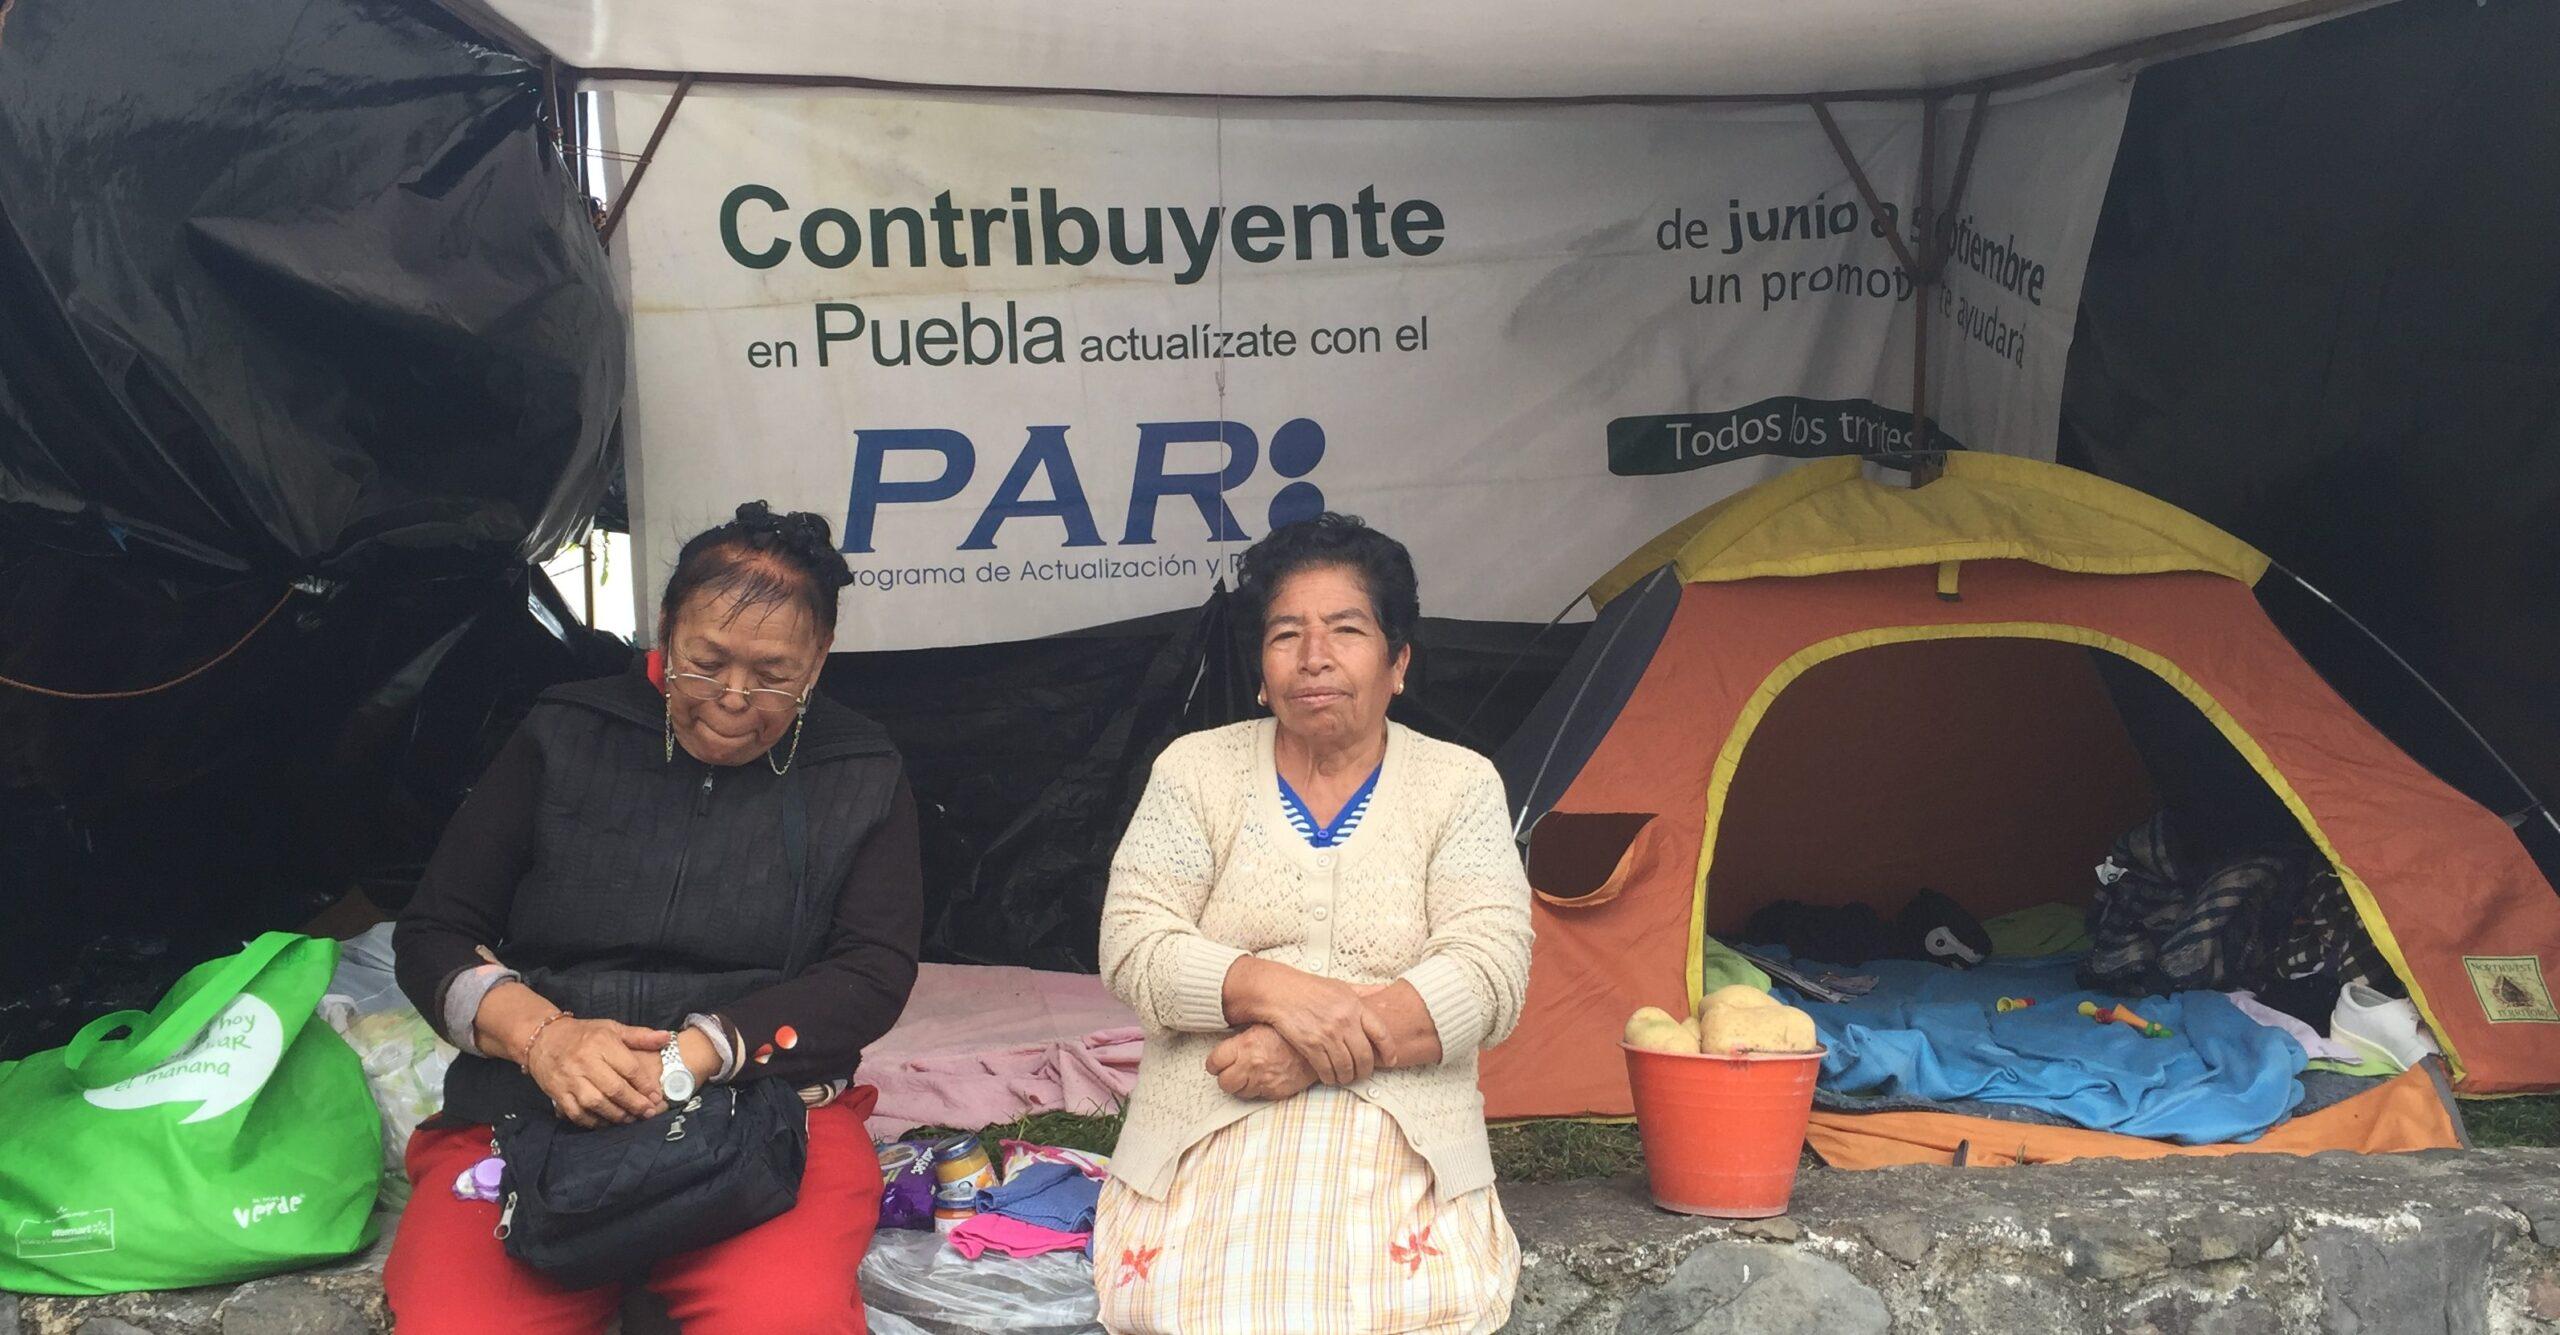 Puebla: albergues improvisados y miedo a rapiña mantienen a damnificados durmiendo en las calles